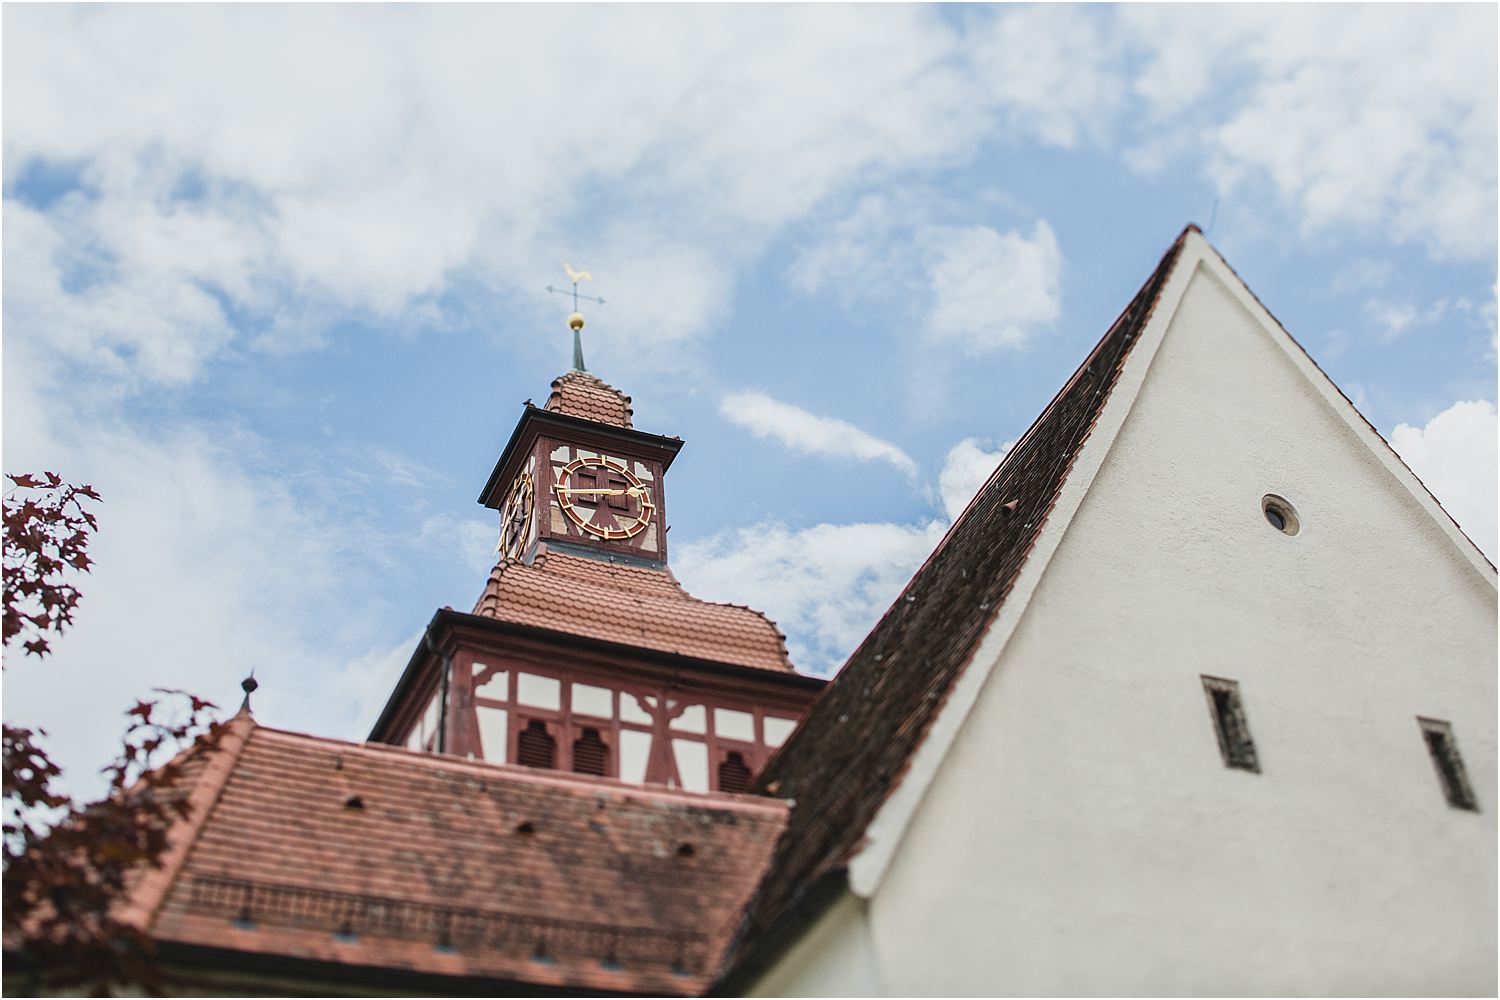 hochzeit-künkele-mühle-hochzeitsfotograf-karoline-kirchhof (58 von 98).jpg